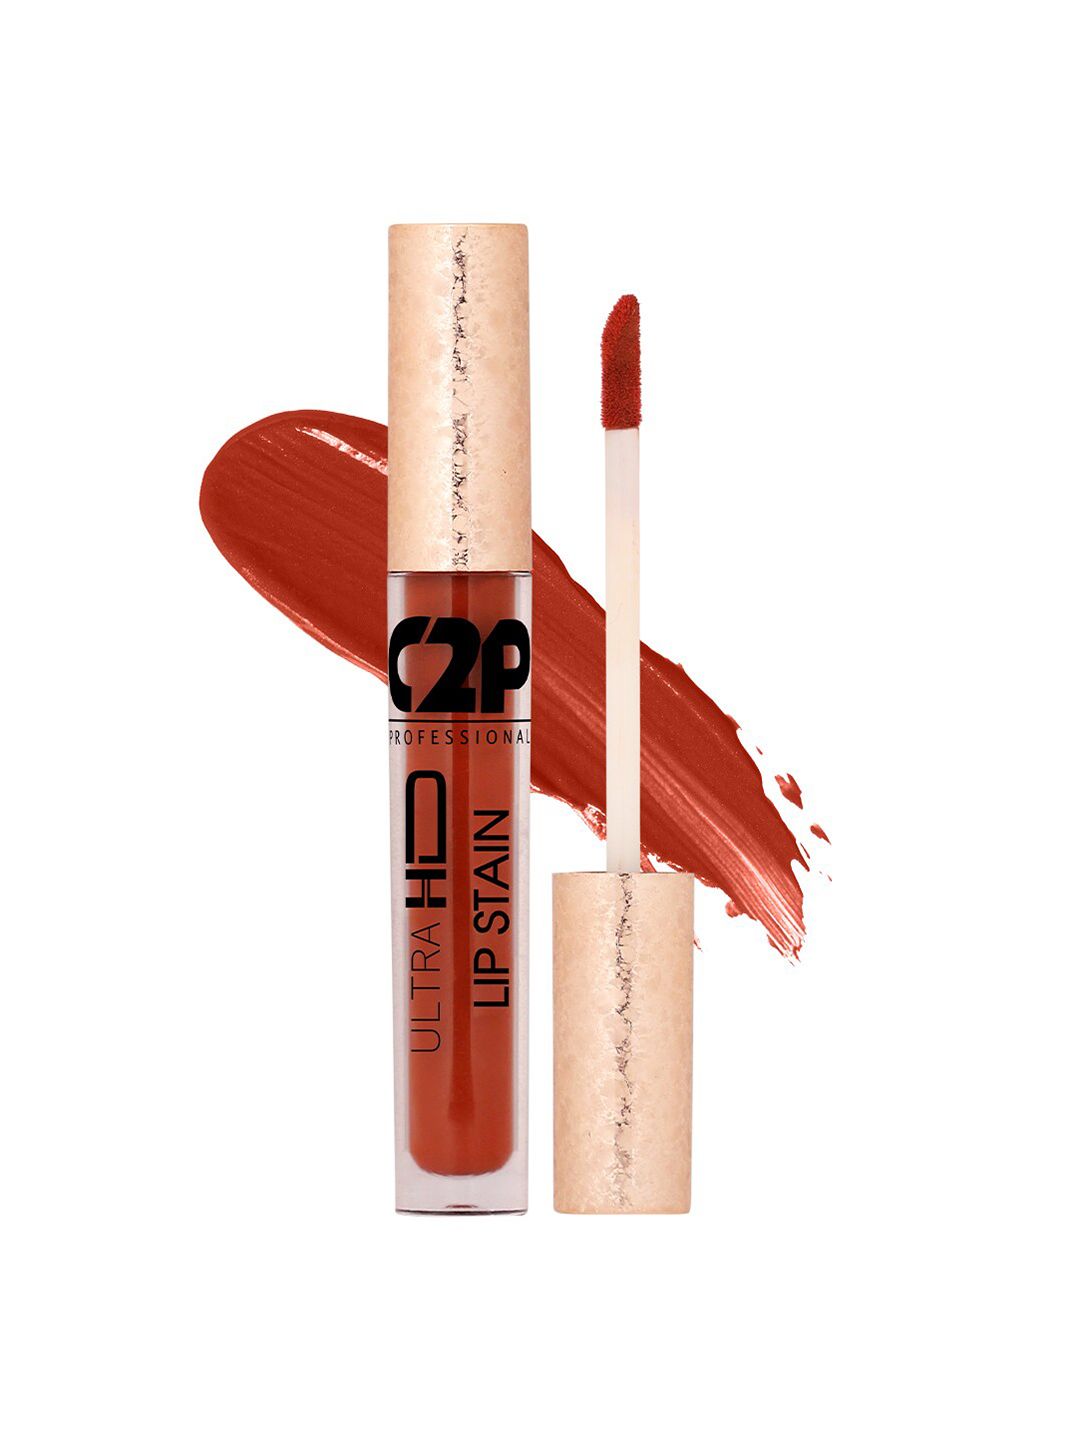 C2P PROFESSIONAL MAKEUP Lip Stain Liquid Lipstick - Teak Trick 04 5ml Price in India